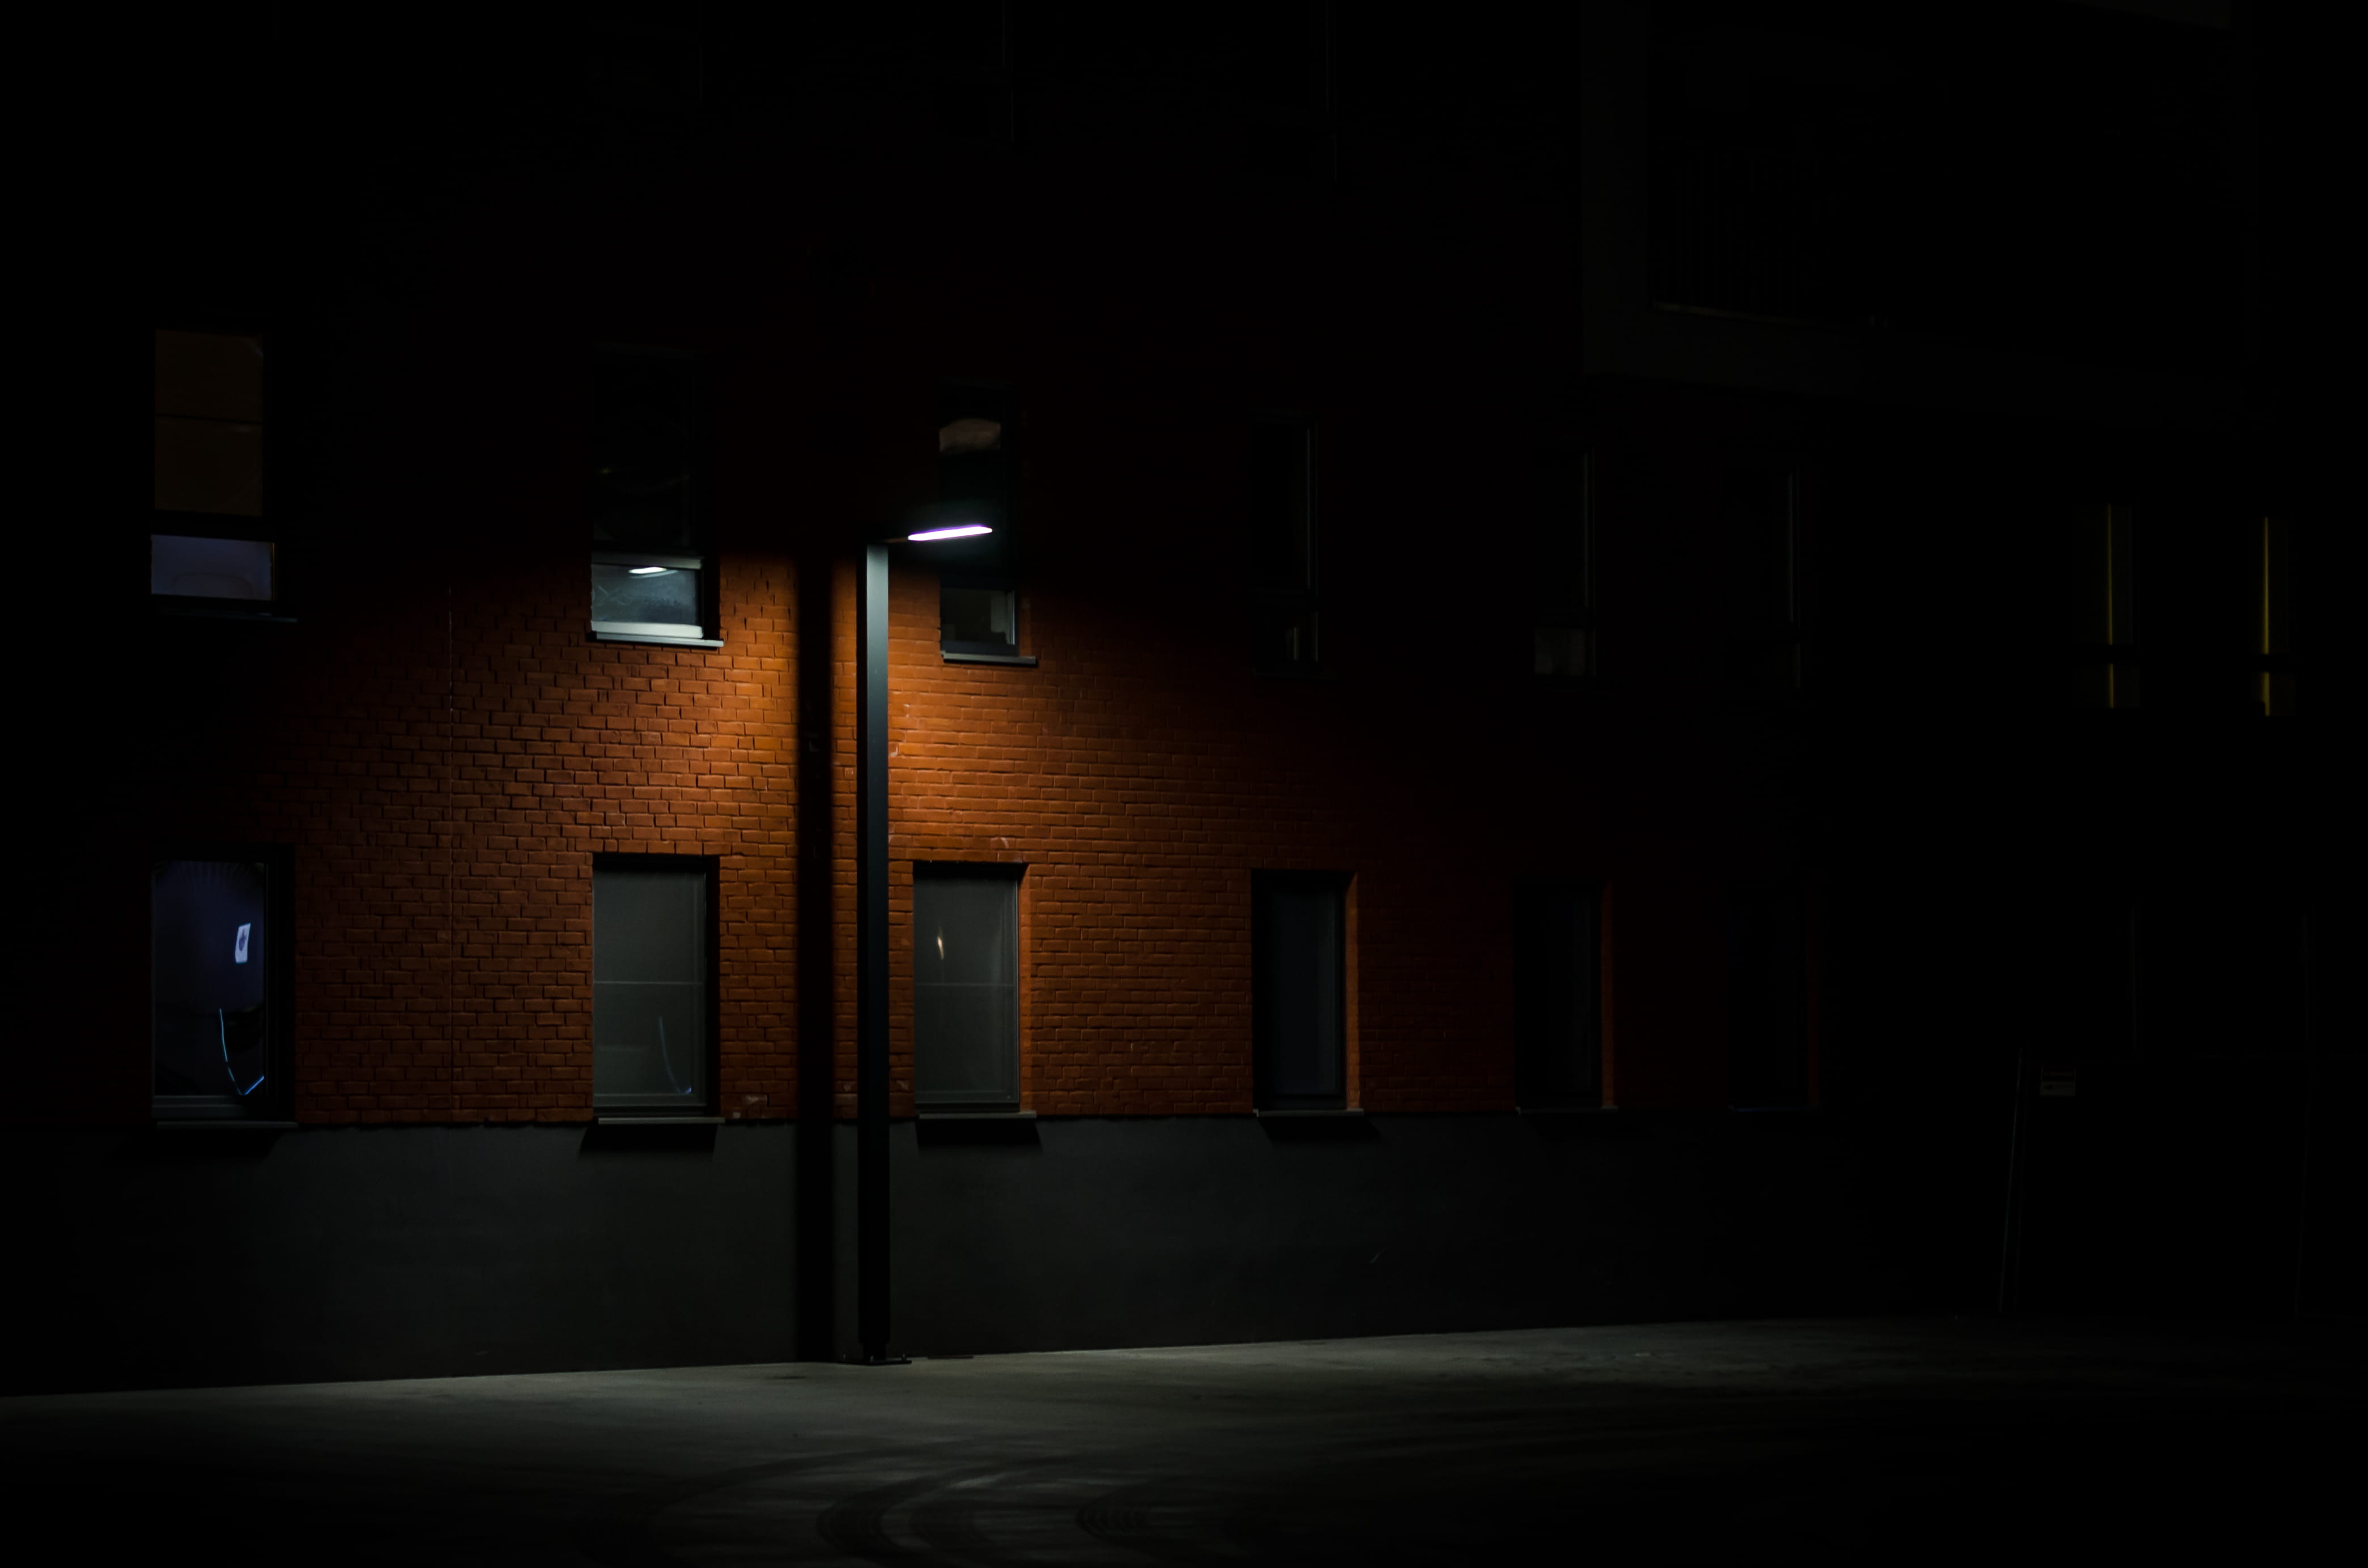 Free download | HD wallpaper: black light post near wall, street light